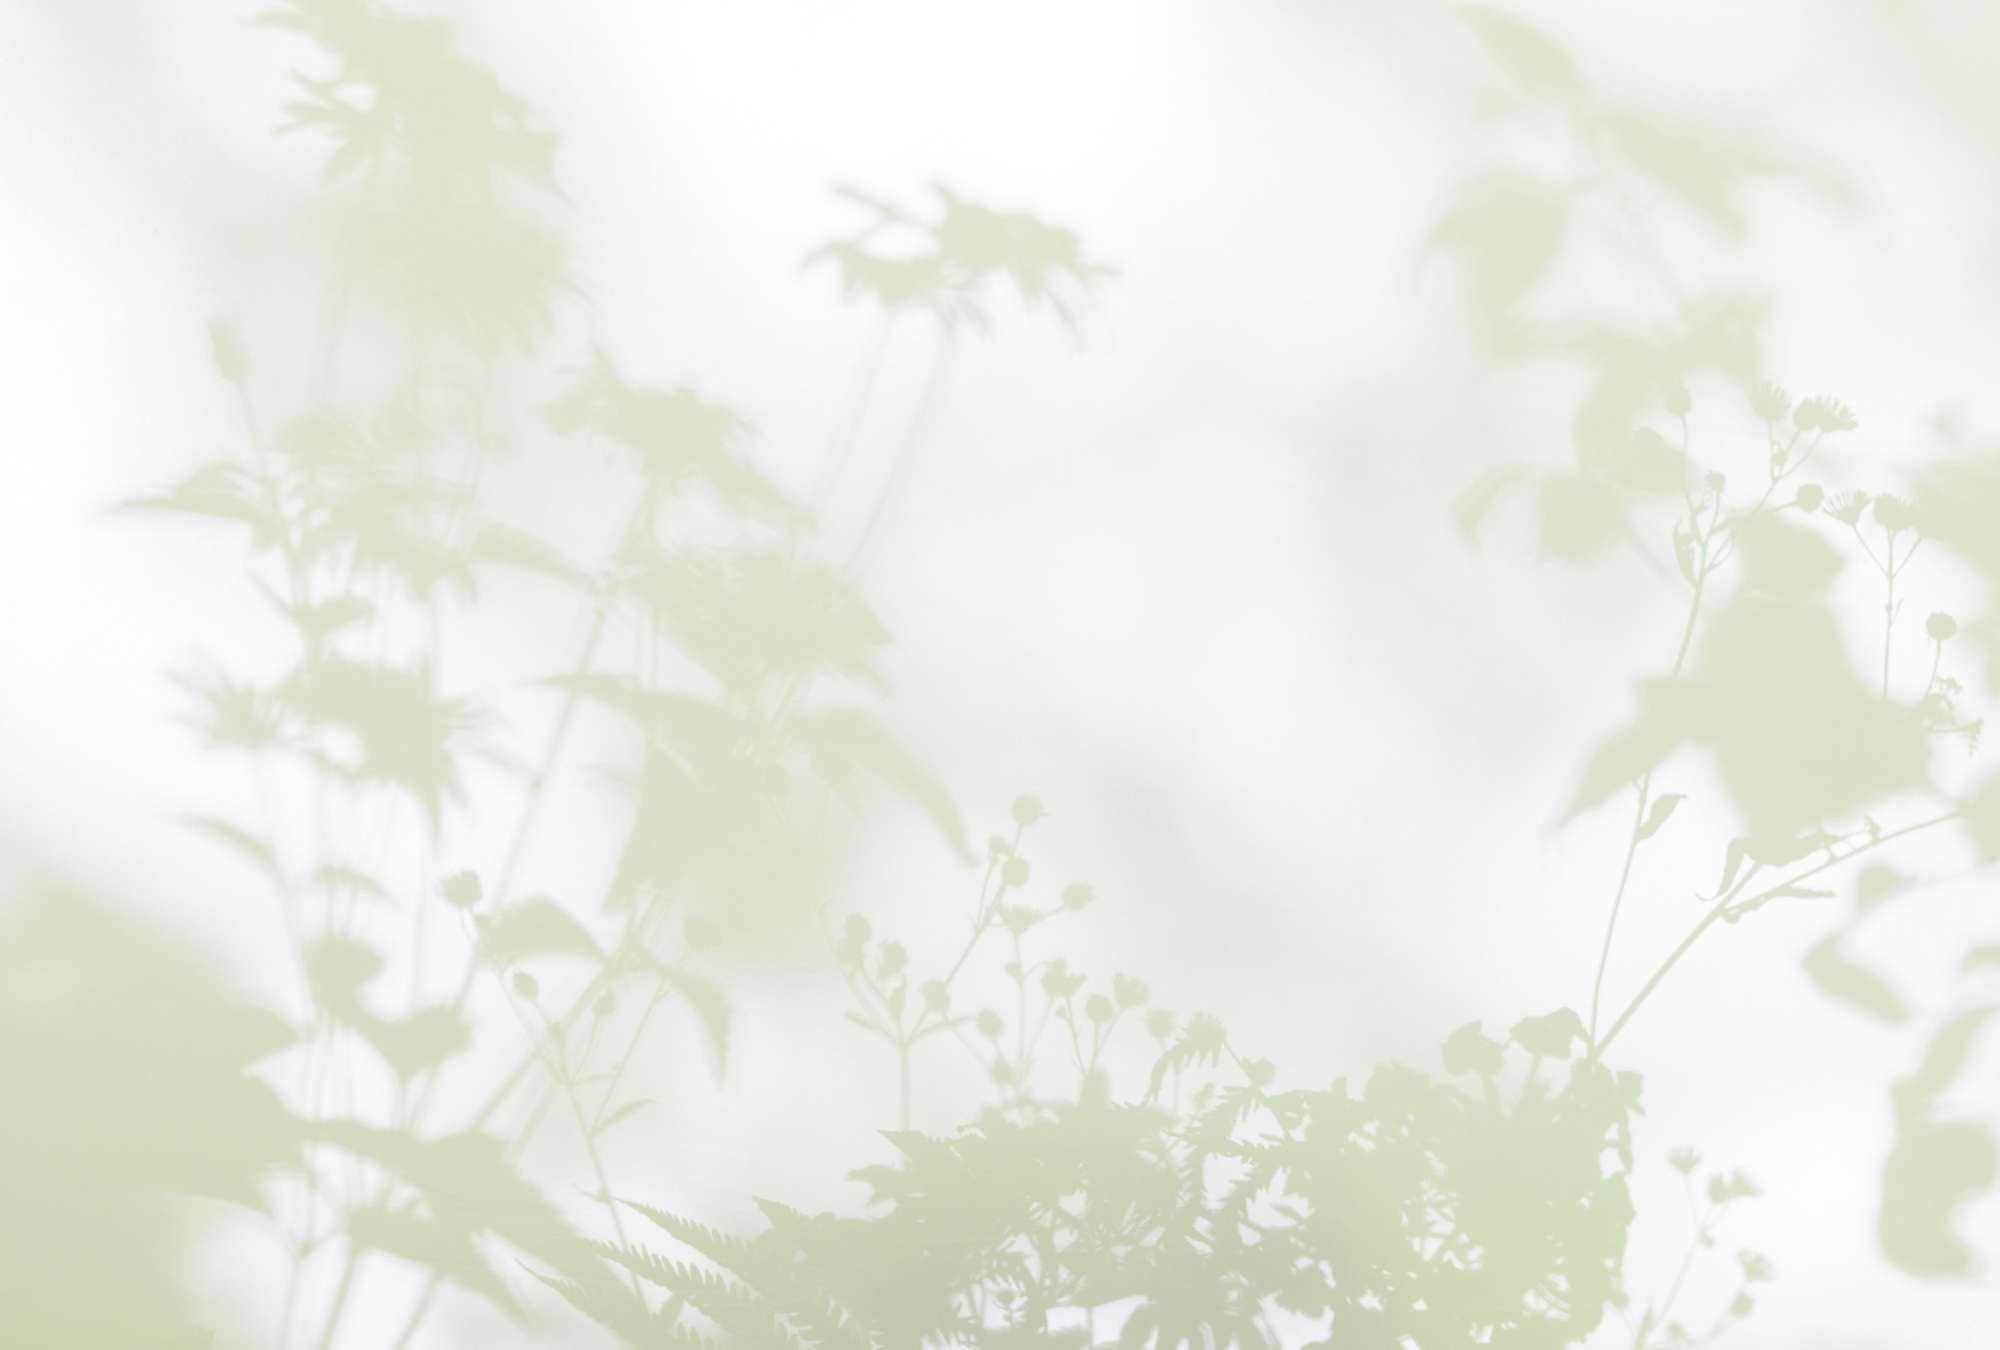             Shadow Room 3 - Papier peint nature Vert et blanc, design délavé
        